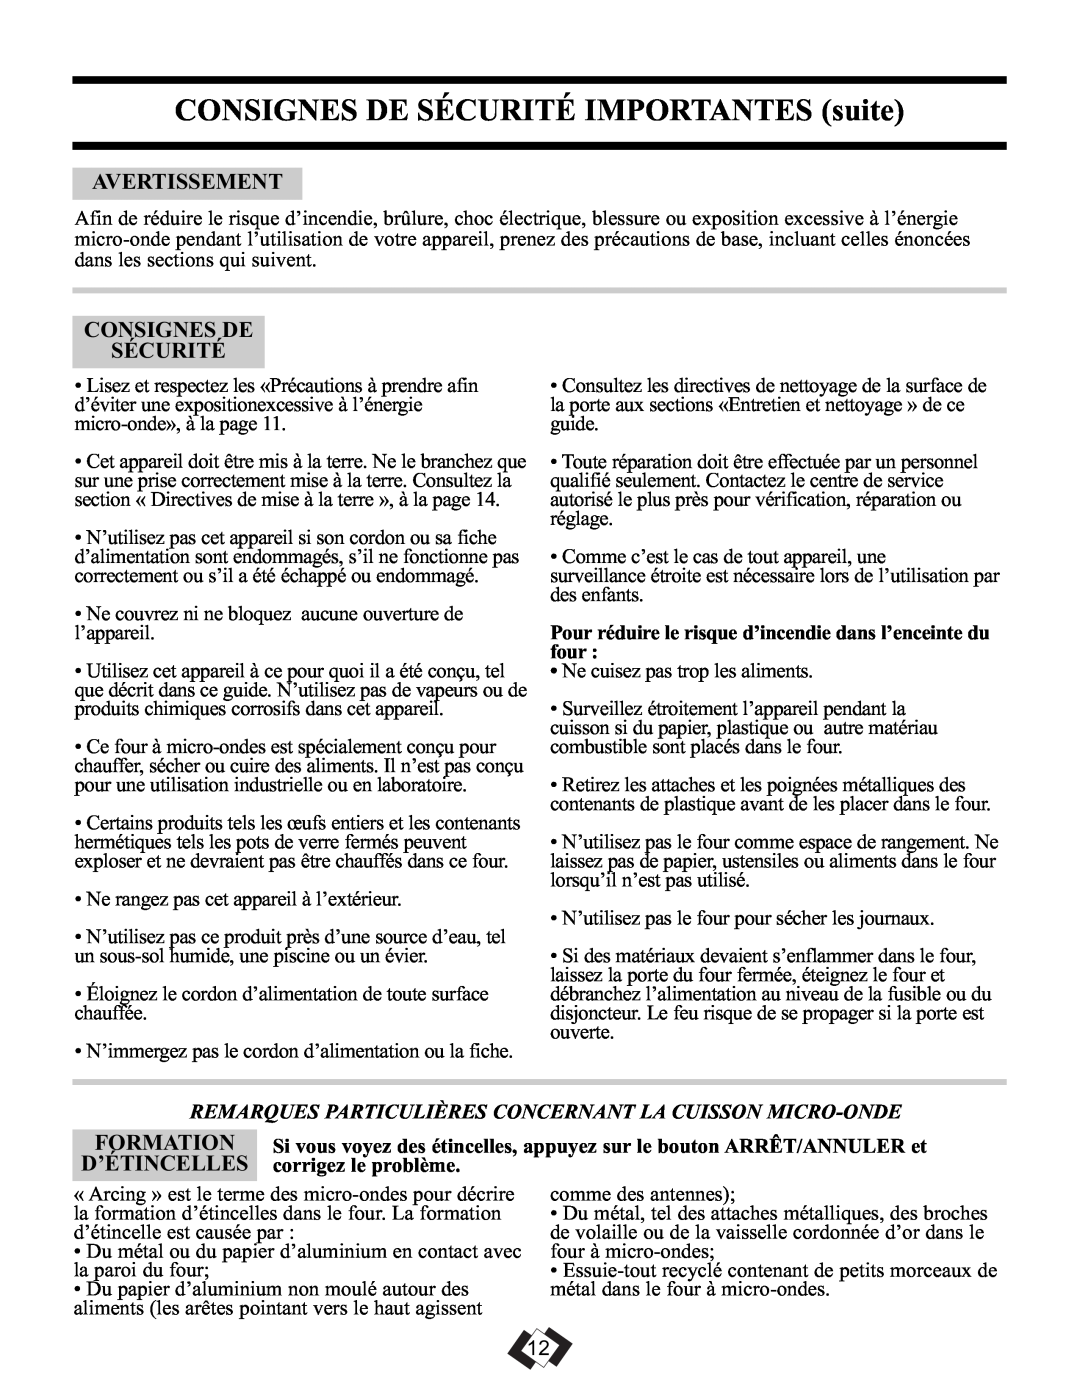 Sunbeam SBMW709BLS CONSIGNES DE SÉCURITÉ IMPORTANTES suite, Avertissement, Consignes De Sécurité, Formation, D’Étincelles 